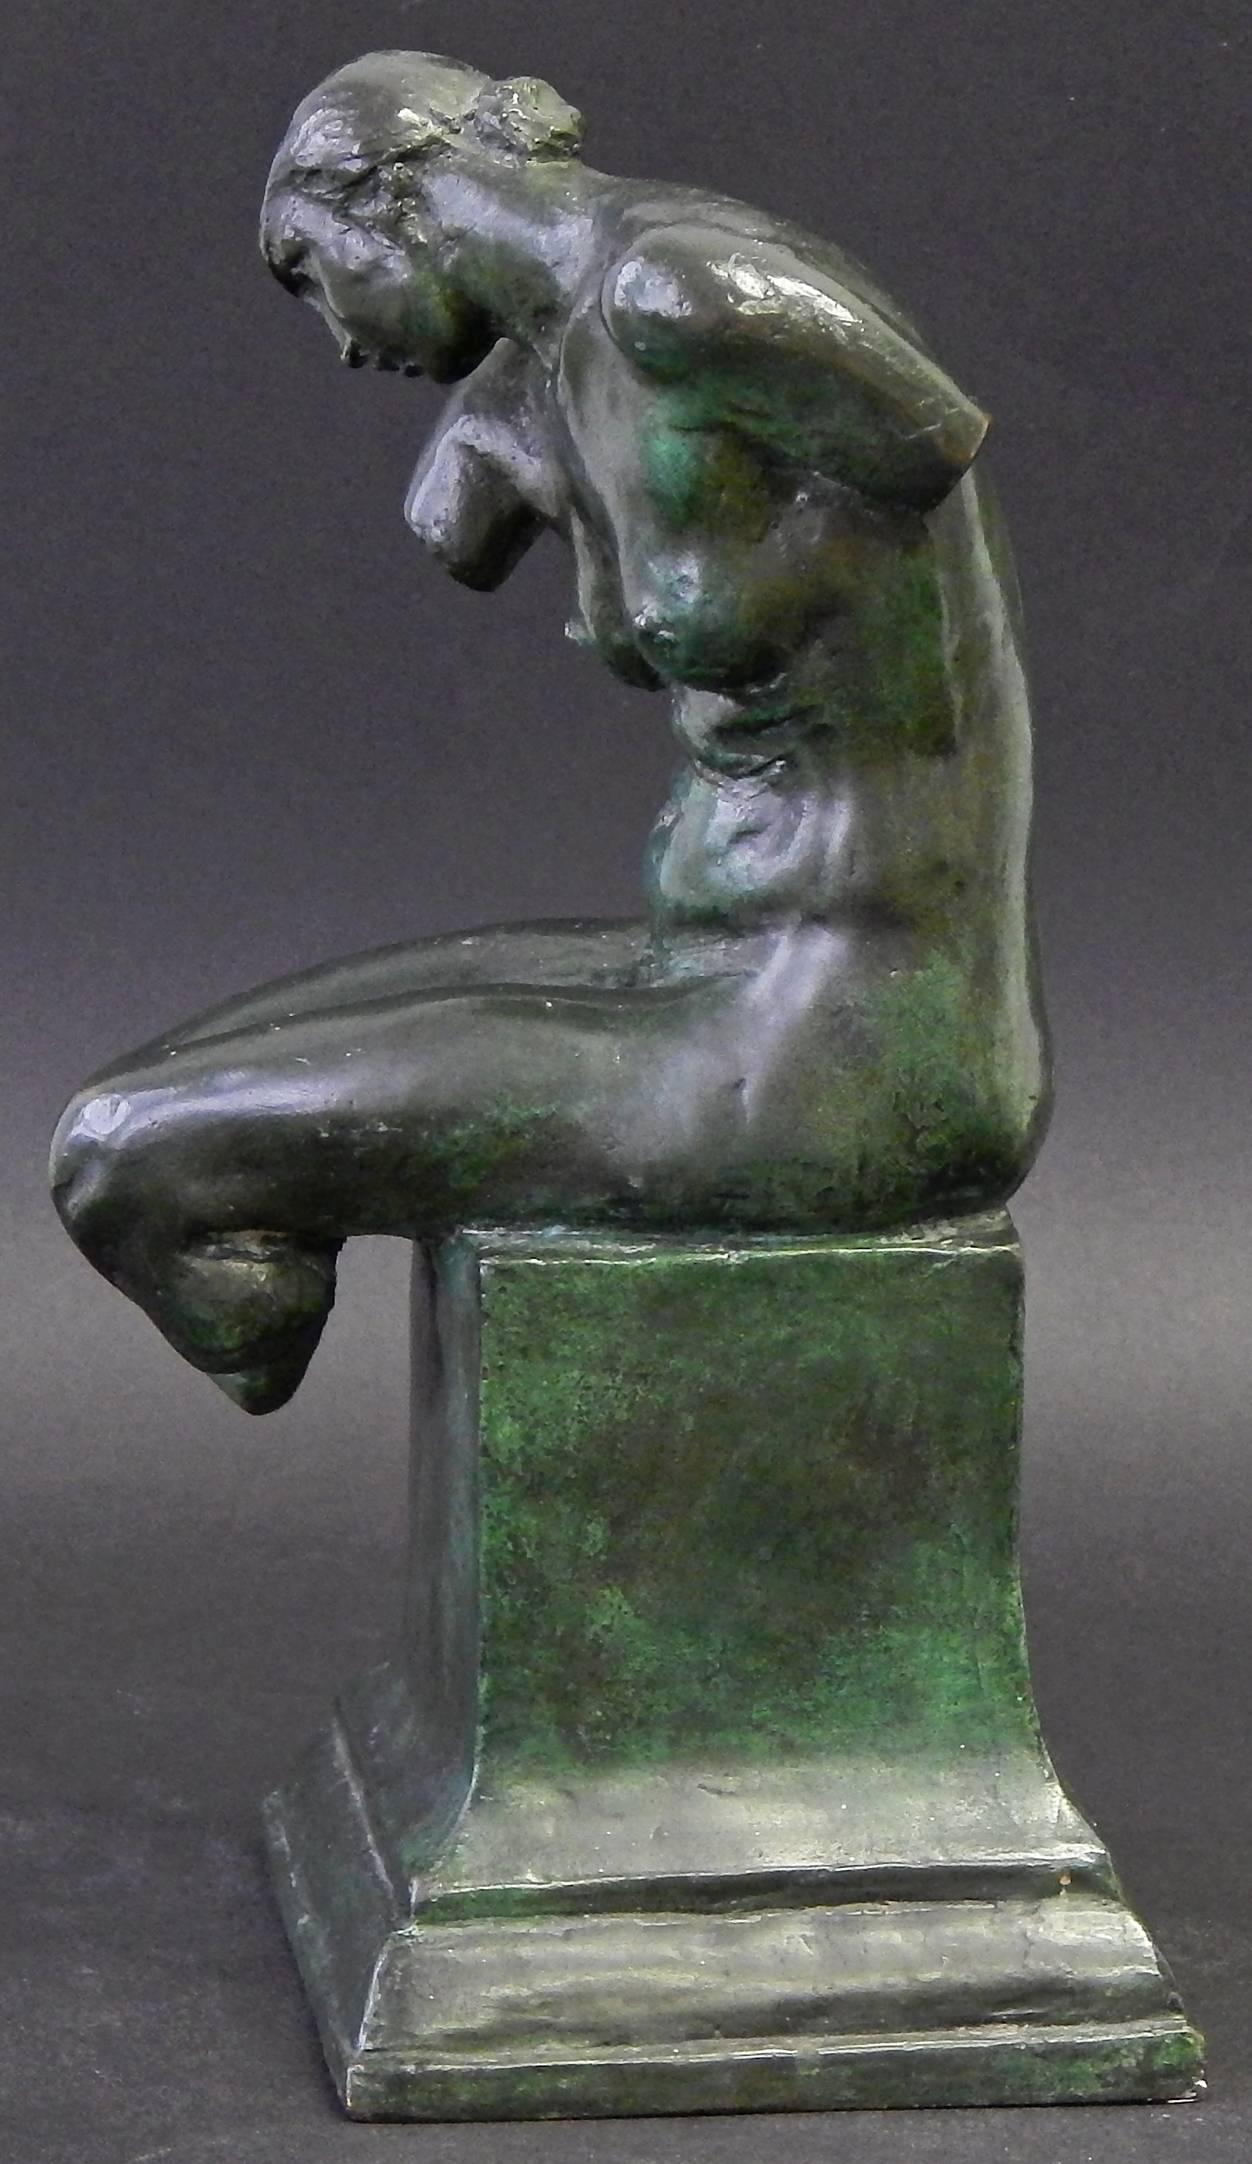 Dieses seltene Paar bronzener Buchstützen, die sitzende weibliche Akte darstellen, wurde von Max Kalish geschaffen, der vor allem für seine Serie von Skulpturen bekannt ist, die den amerikanischen Arbeiter feiern. Durch das Abschneiden der